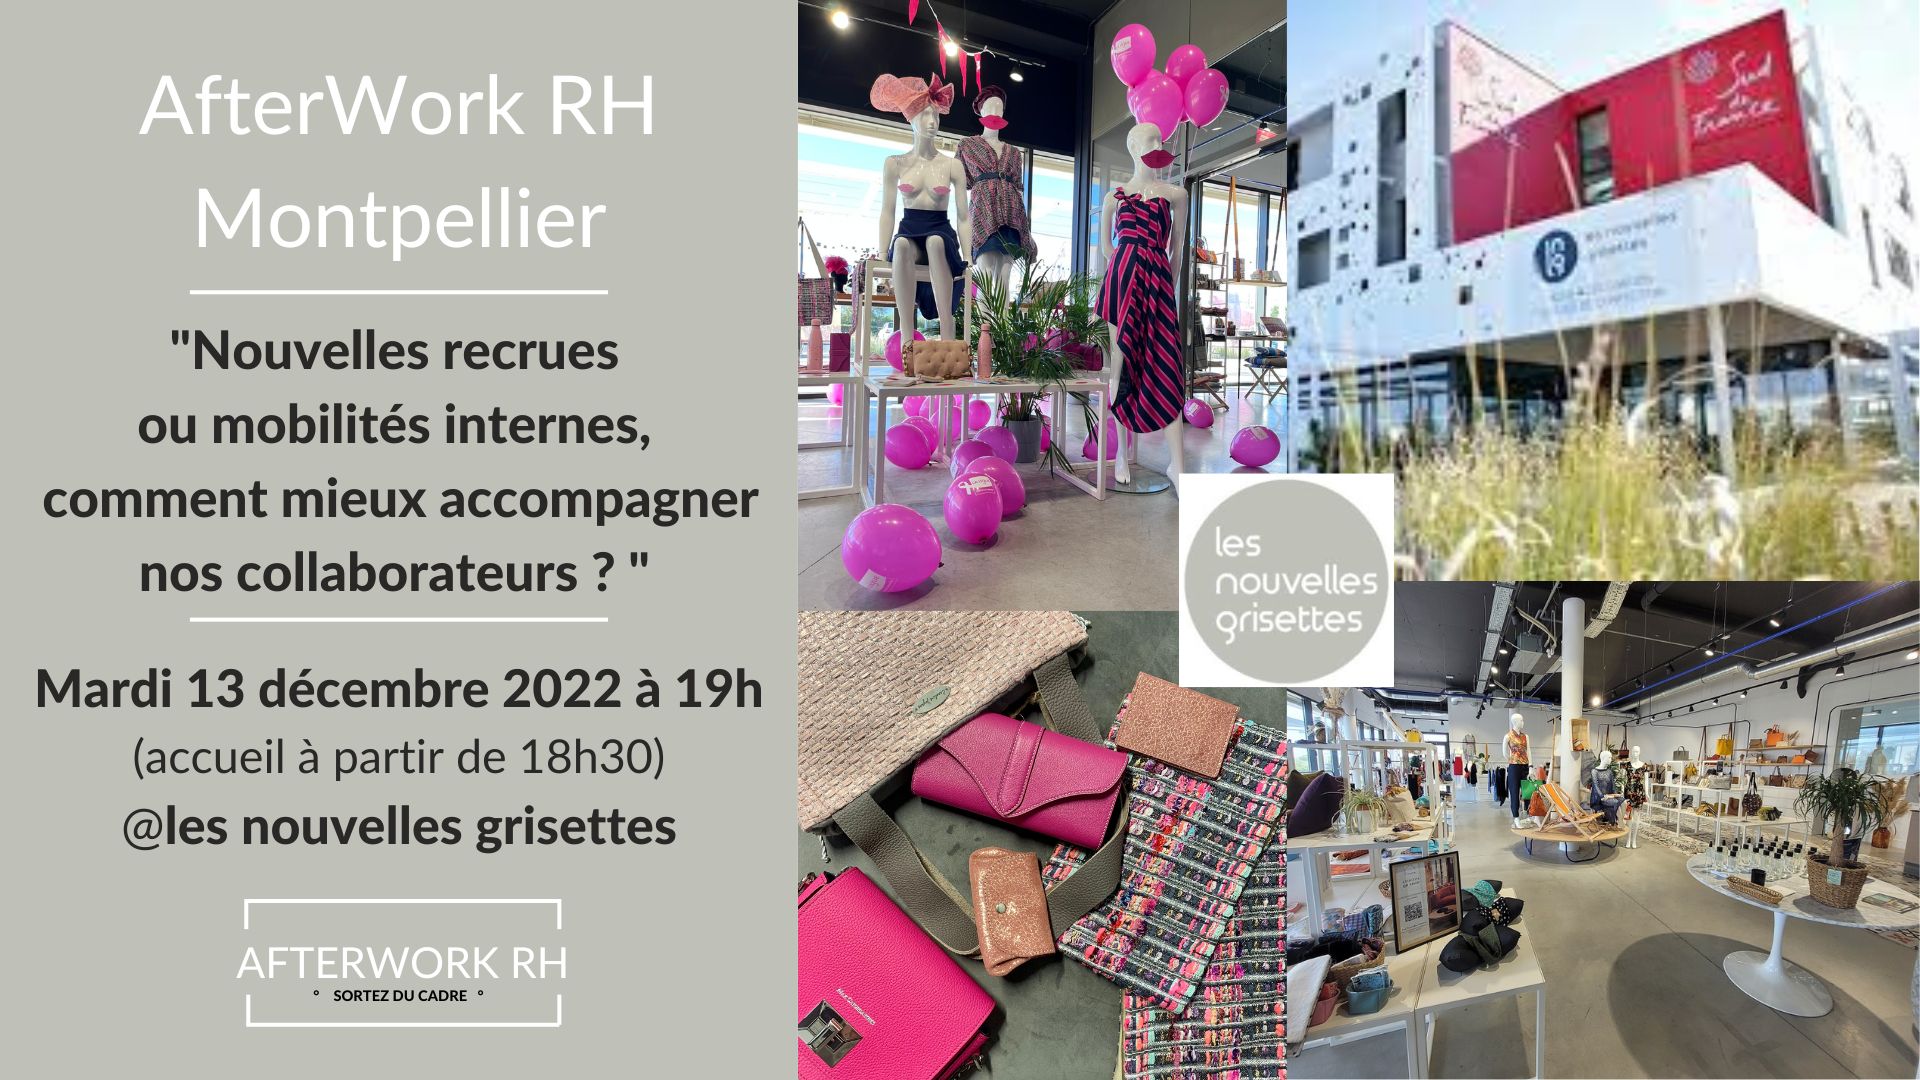 AfterWork RH Montpellier - décembre 22 - nouvelel recrues ou mobilités internes, comment mieux accompagner nos collaborateurs ?